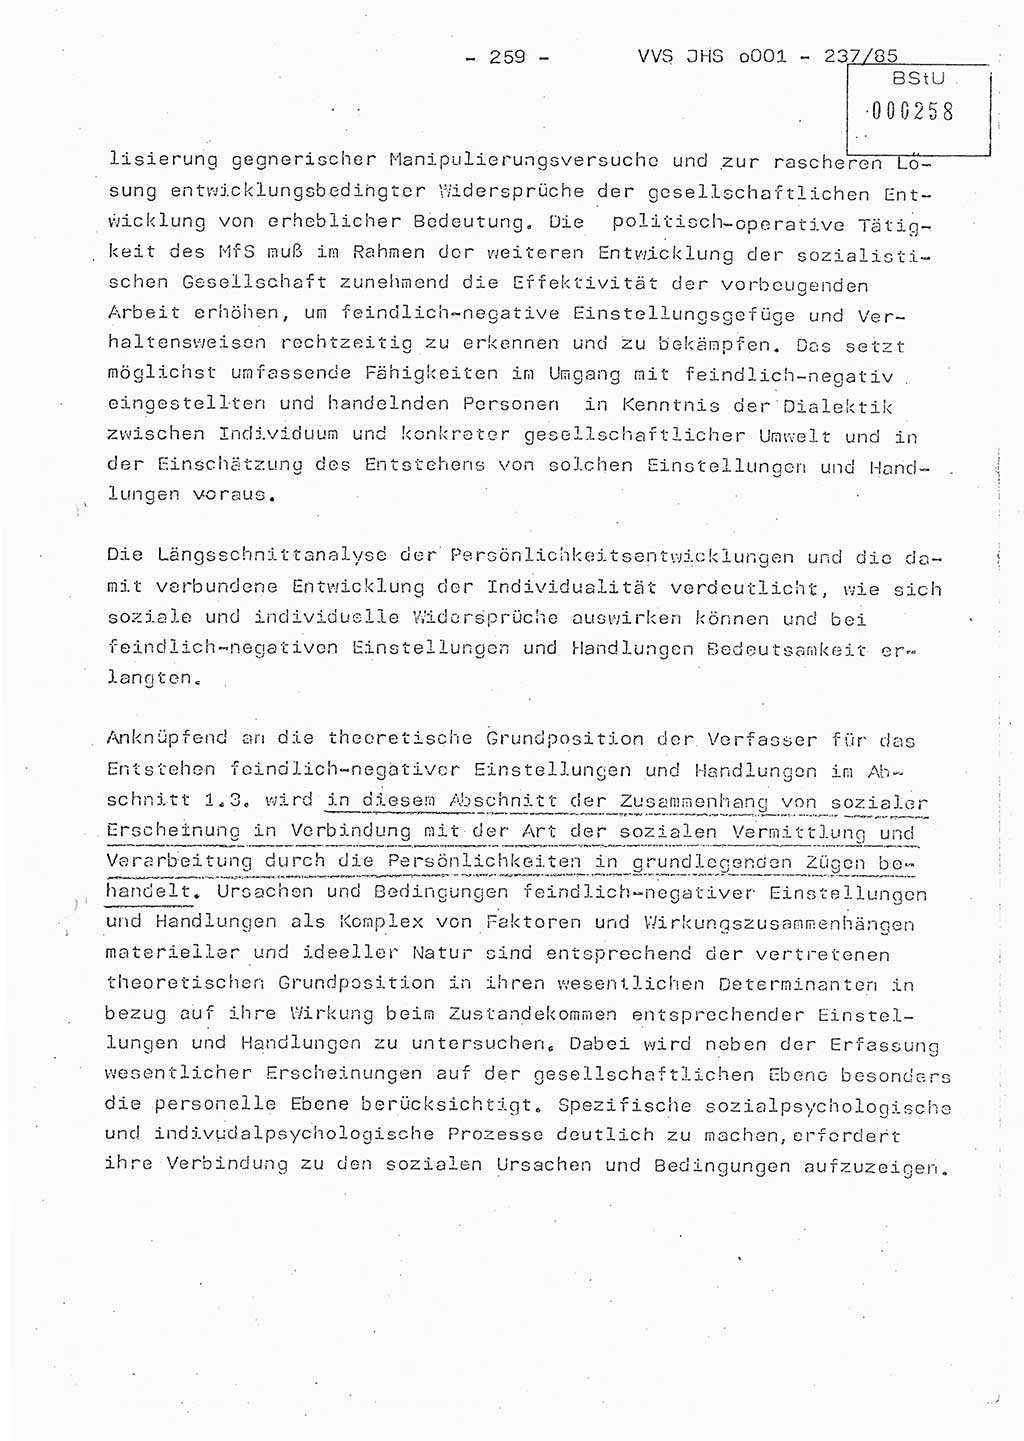 Dissertation Oberstleutnant Peter Jakulski (JHS), Oberstleutnat Christian Rudolph (HA Ⅸ), Major Horst Böttger (ZMD), Major Wolfgang Grüneberg (JHS), Major Albert Meutsch (JHS), Ministerium für Staatssicherheit (MfS) [Deutsche Demokratische Republik (DDR)], Juristische Hochschule (JHS), Vertrauliche Verschlußsache (VVS) o001-237/85, Potsdam 1985, Seite 259 (Diss. MfS DDR JHS VVS o001-237/85 1985, S. 259)